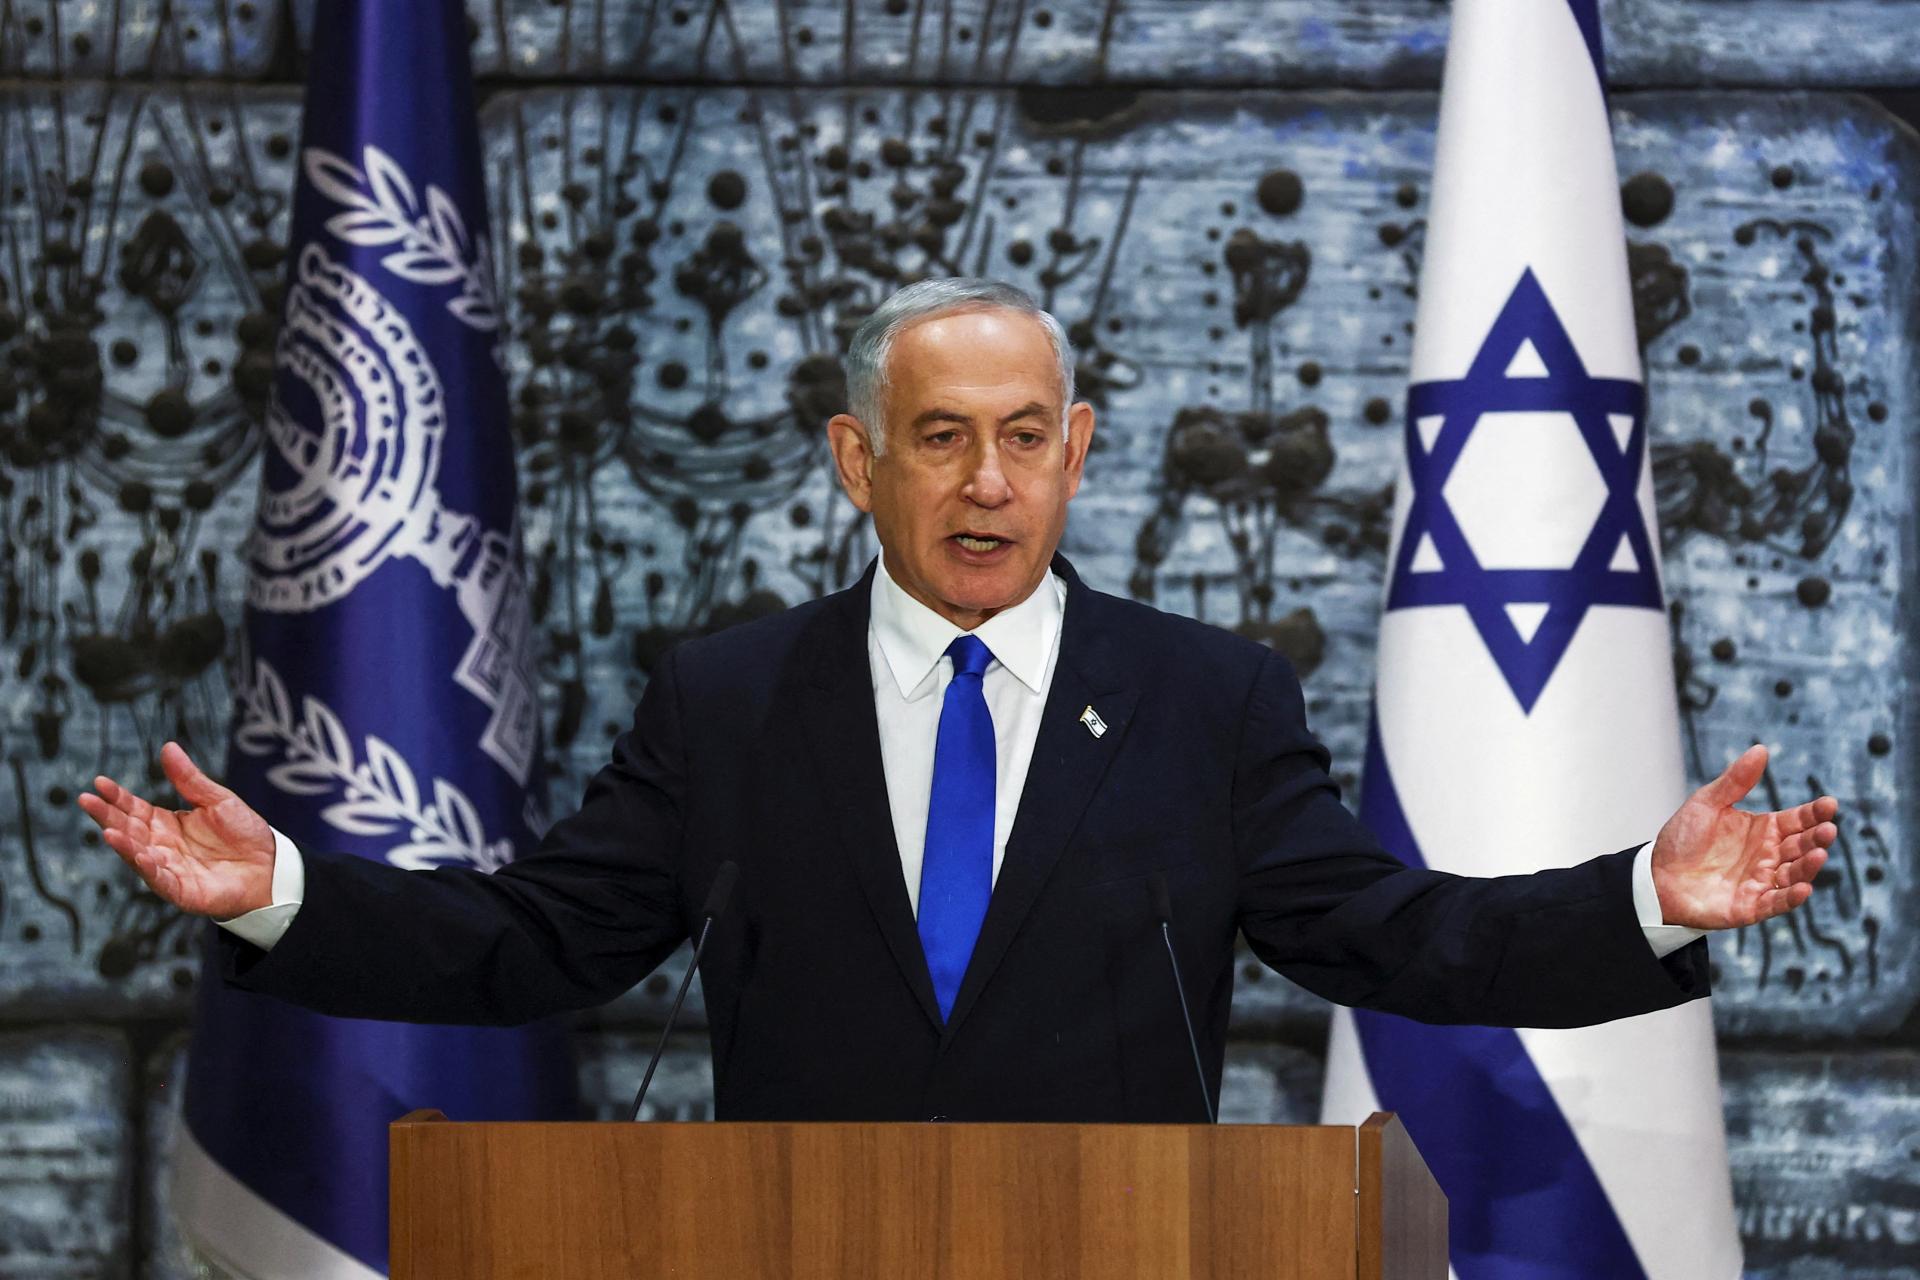 Budúci izraelský premiér Netanjahu pokarhal koaličného partnera za komentáre proti LGBTQ komunite